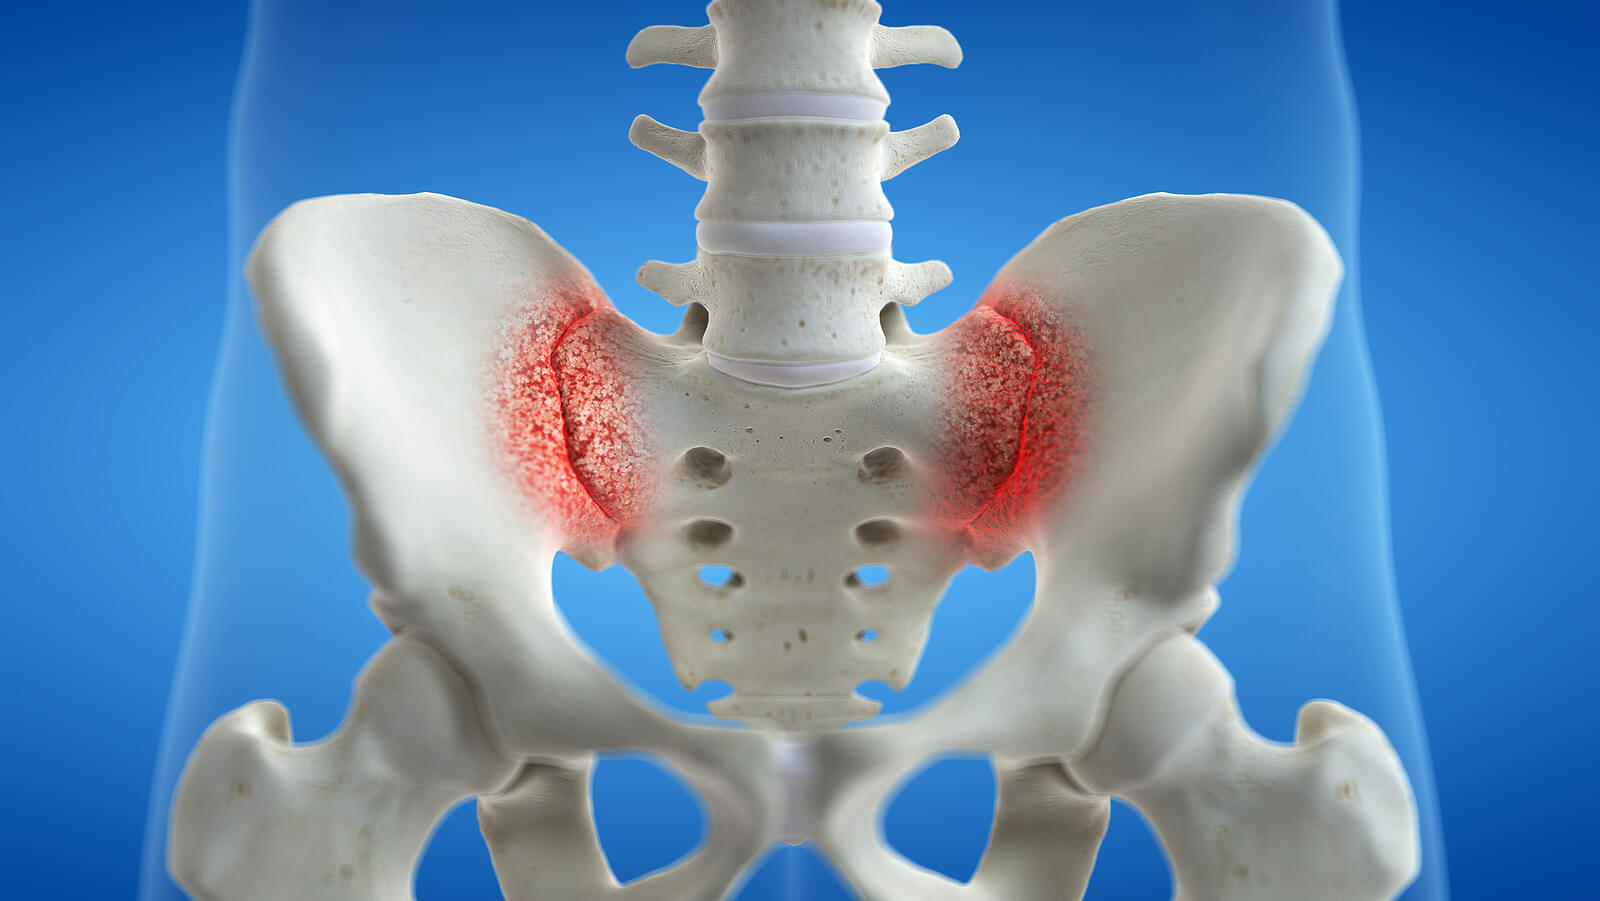 Hipermovilidad de la articulación sacroilíaca con dolor por artritis.